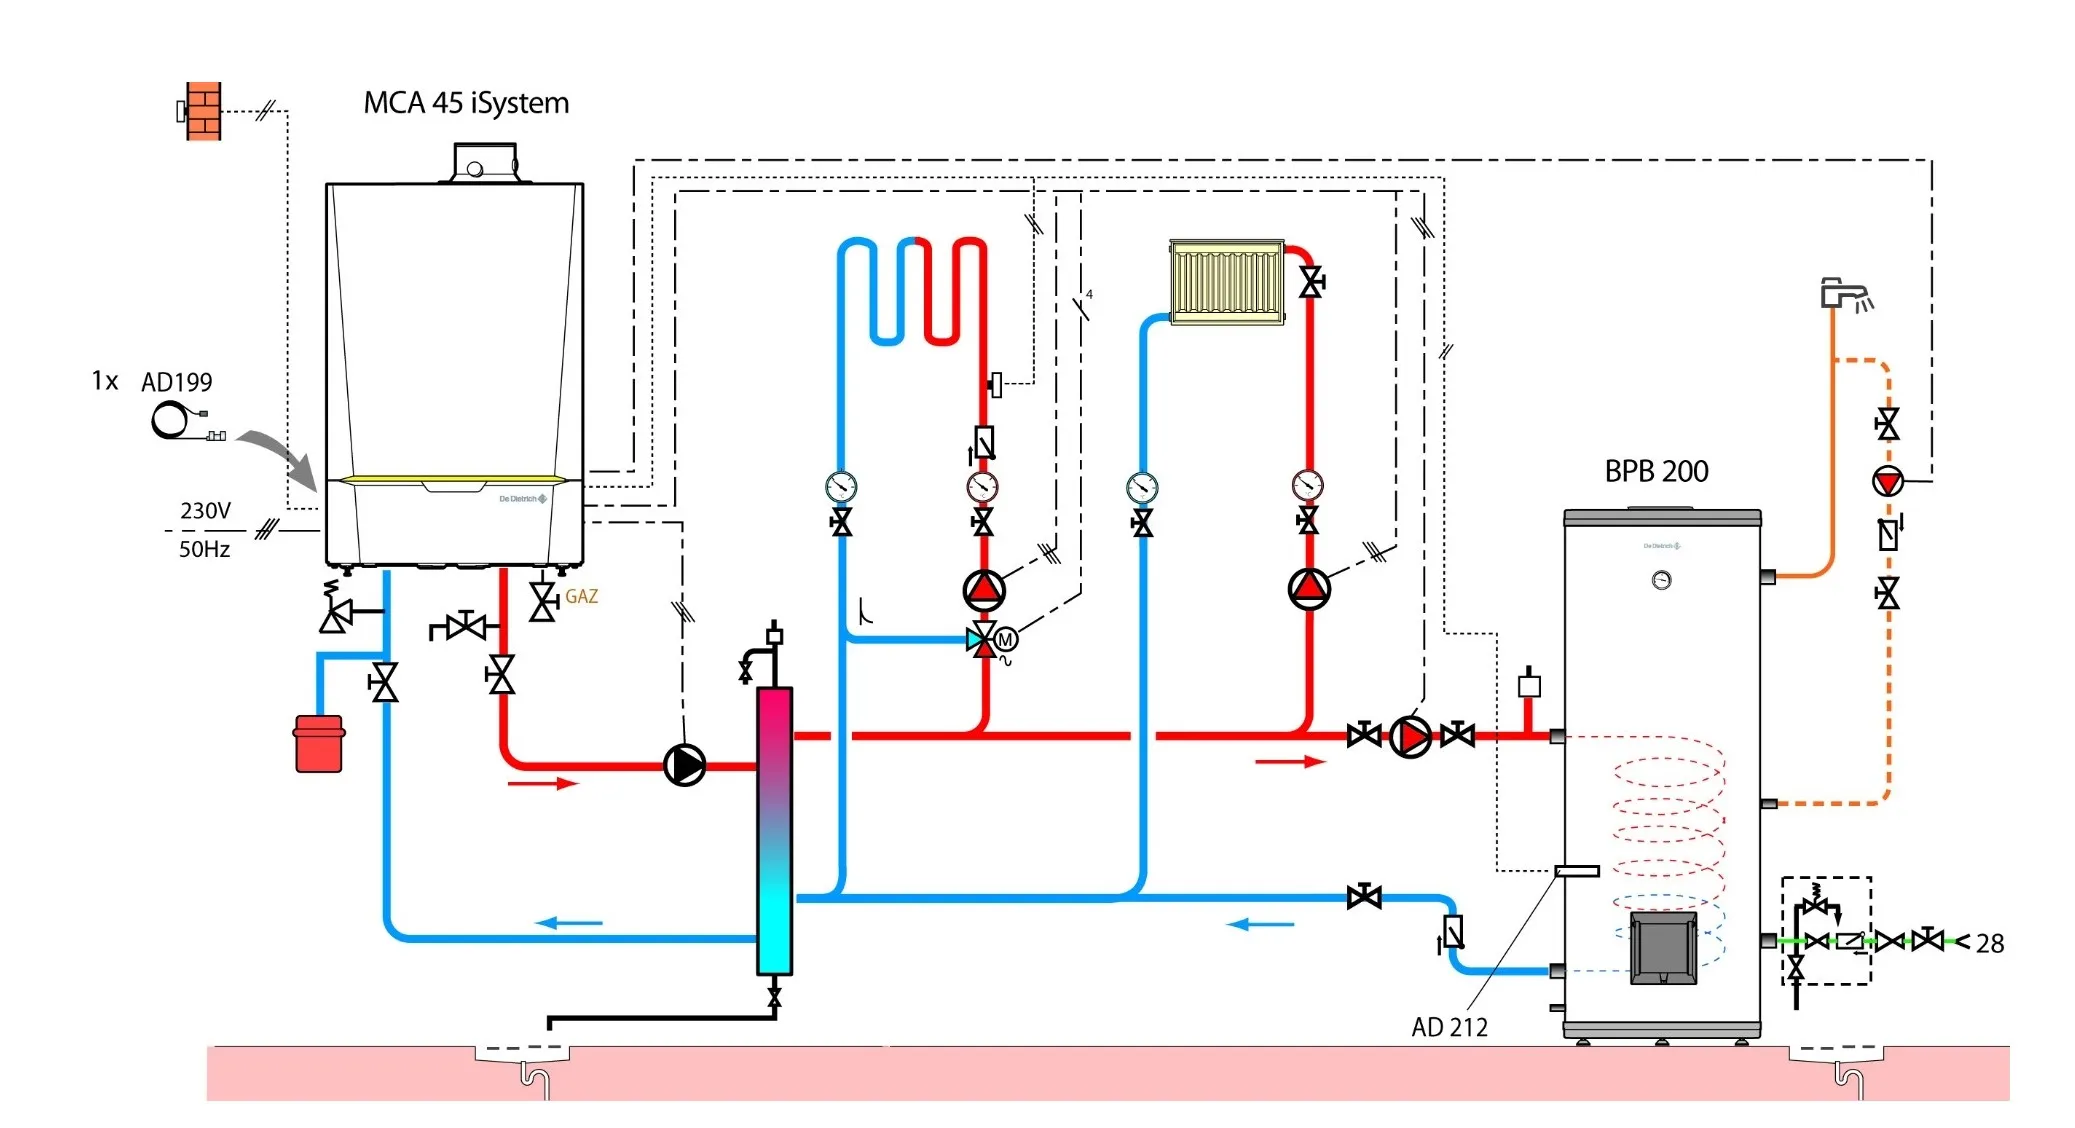 Схема рециркуляции горячей воды с бойлером